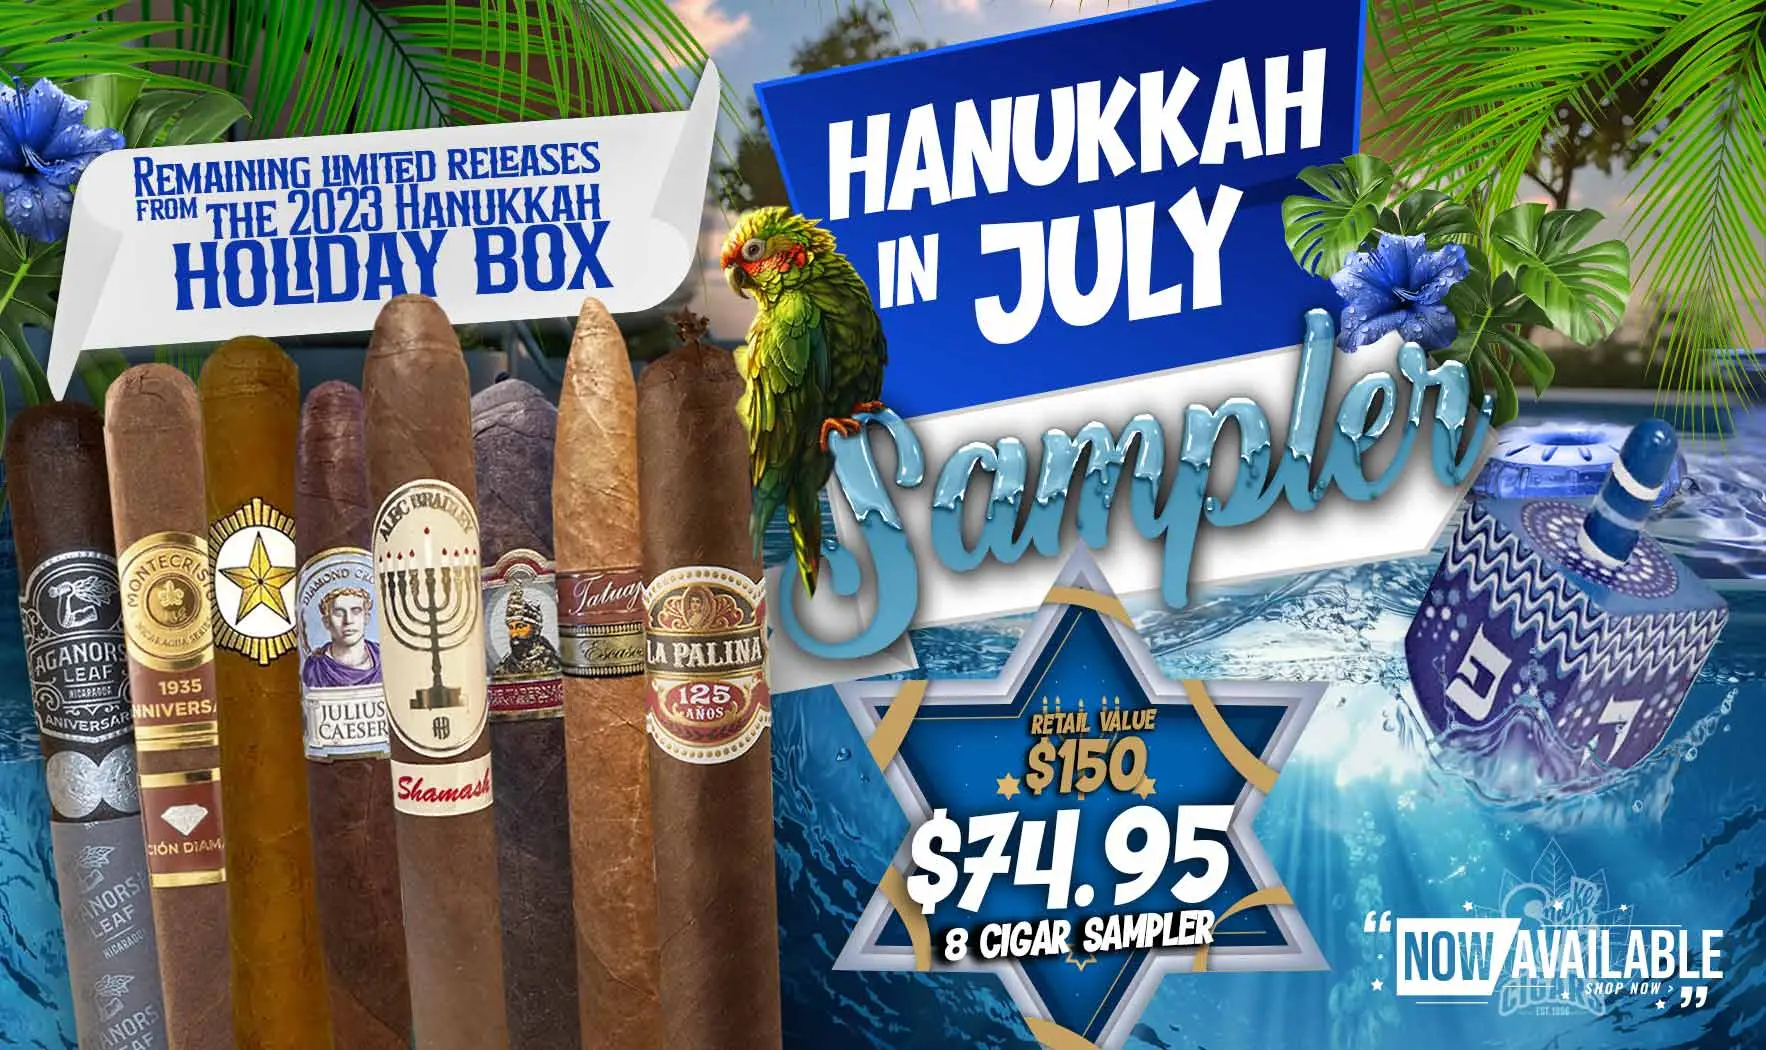 Hanukkah in July Sampler